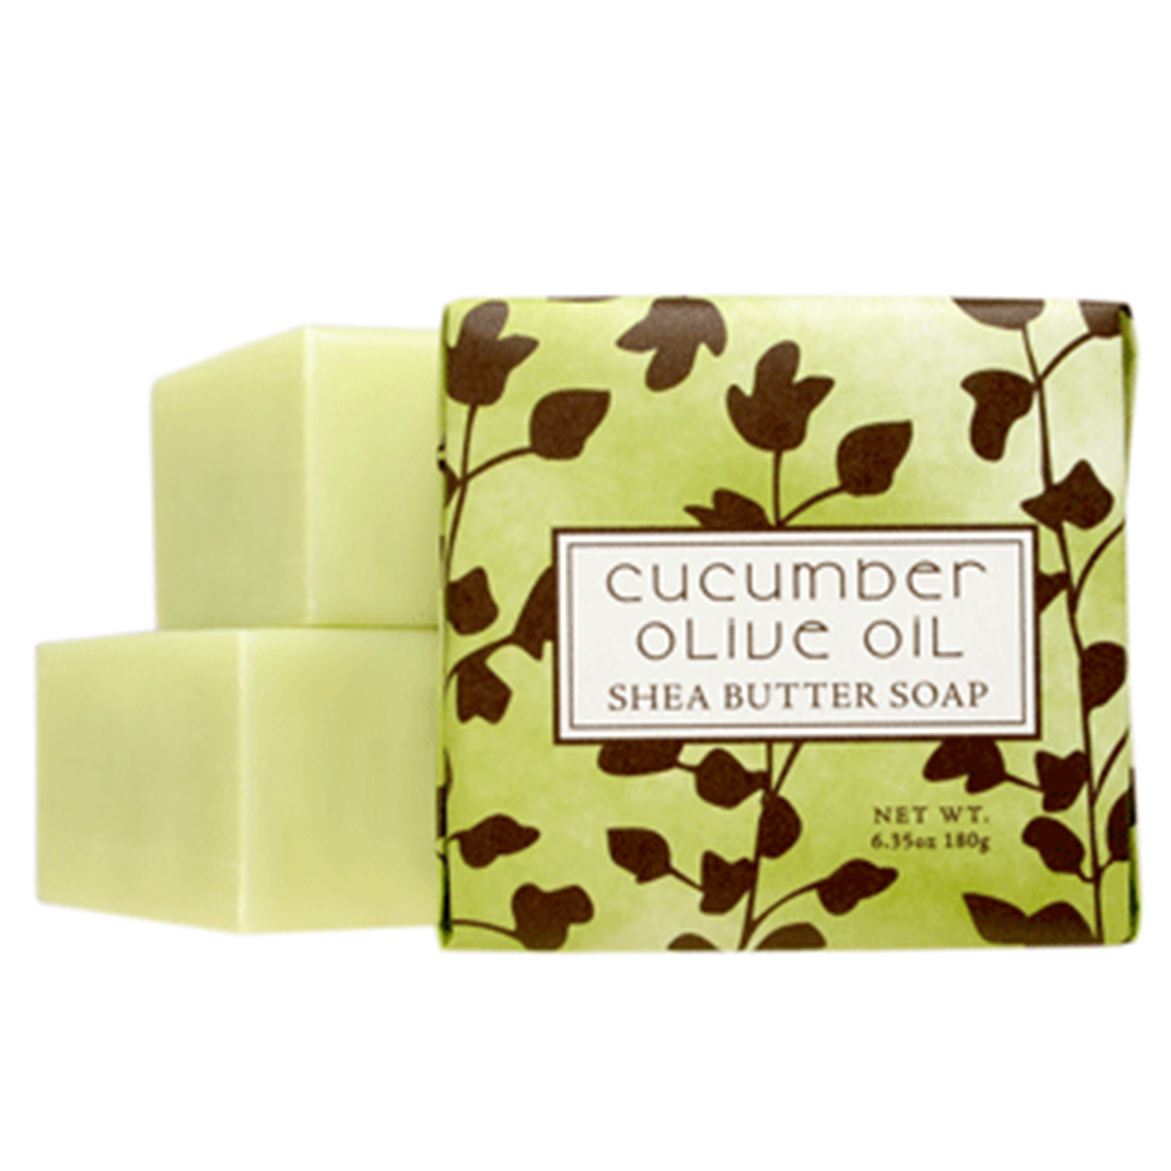 Cucumber Olive Oil Shea Butter Soap